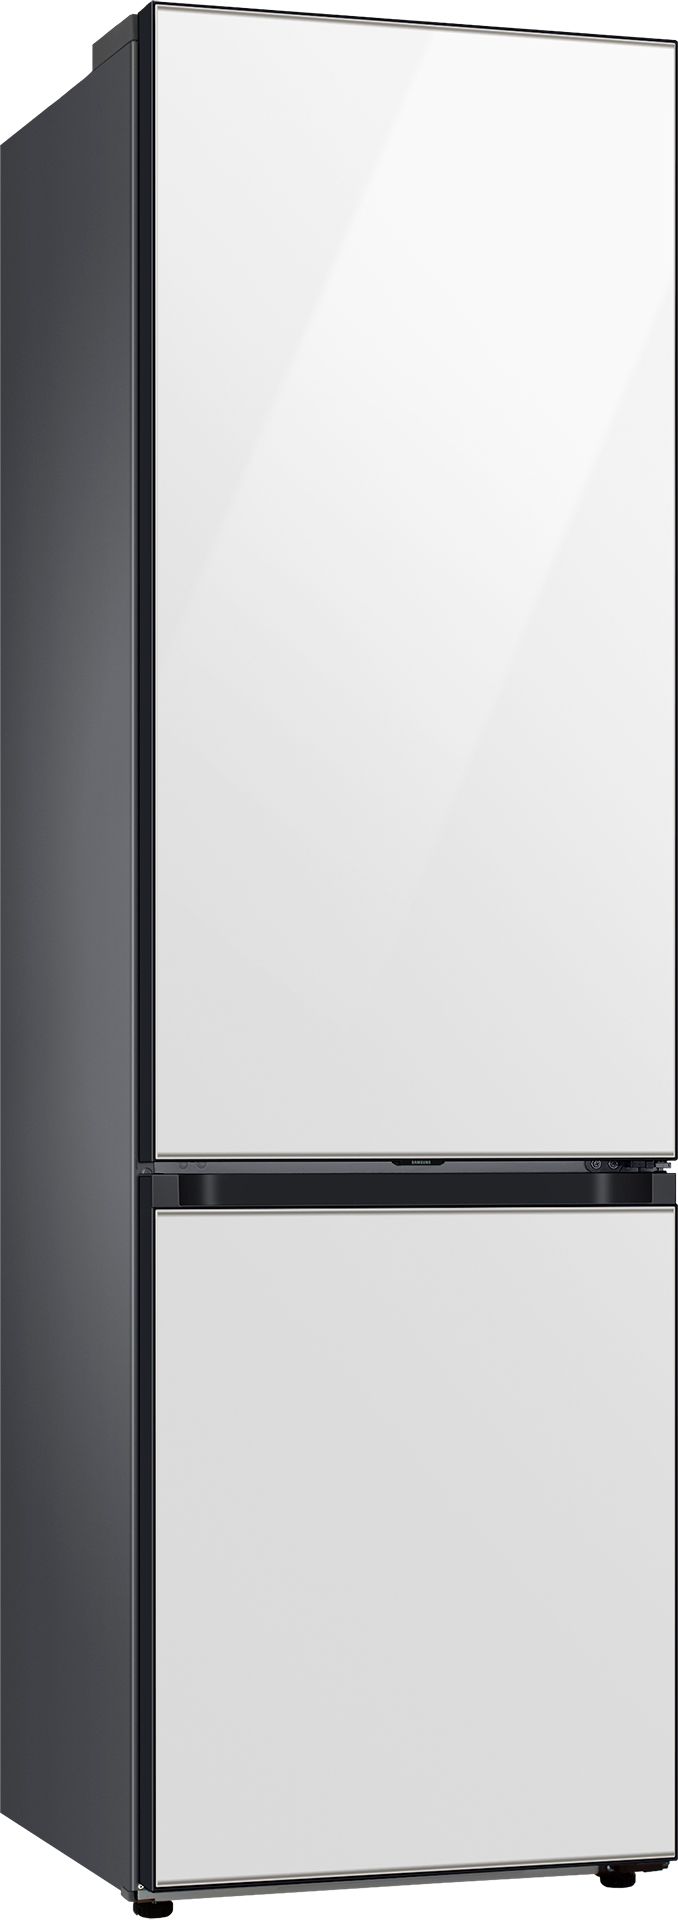 Холодильник Samsung RB38A6B6212/UA внешний вид - фото 9